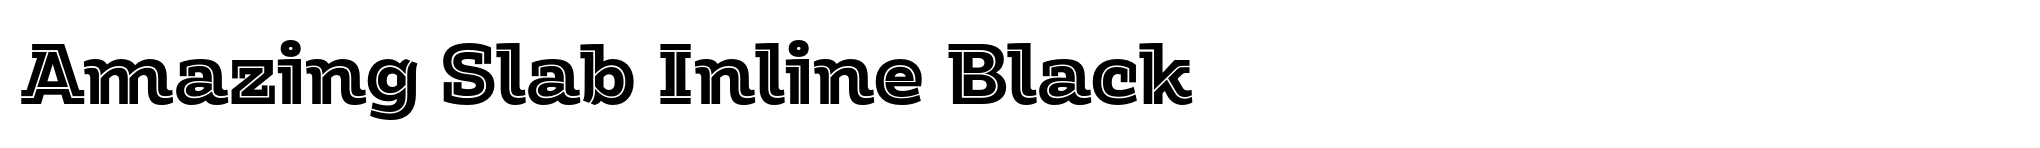 Amazing Slab Inline Black image